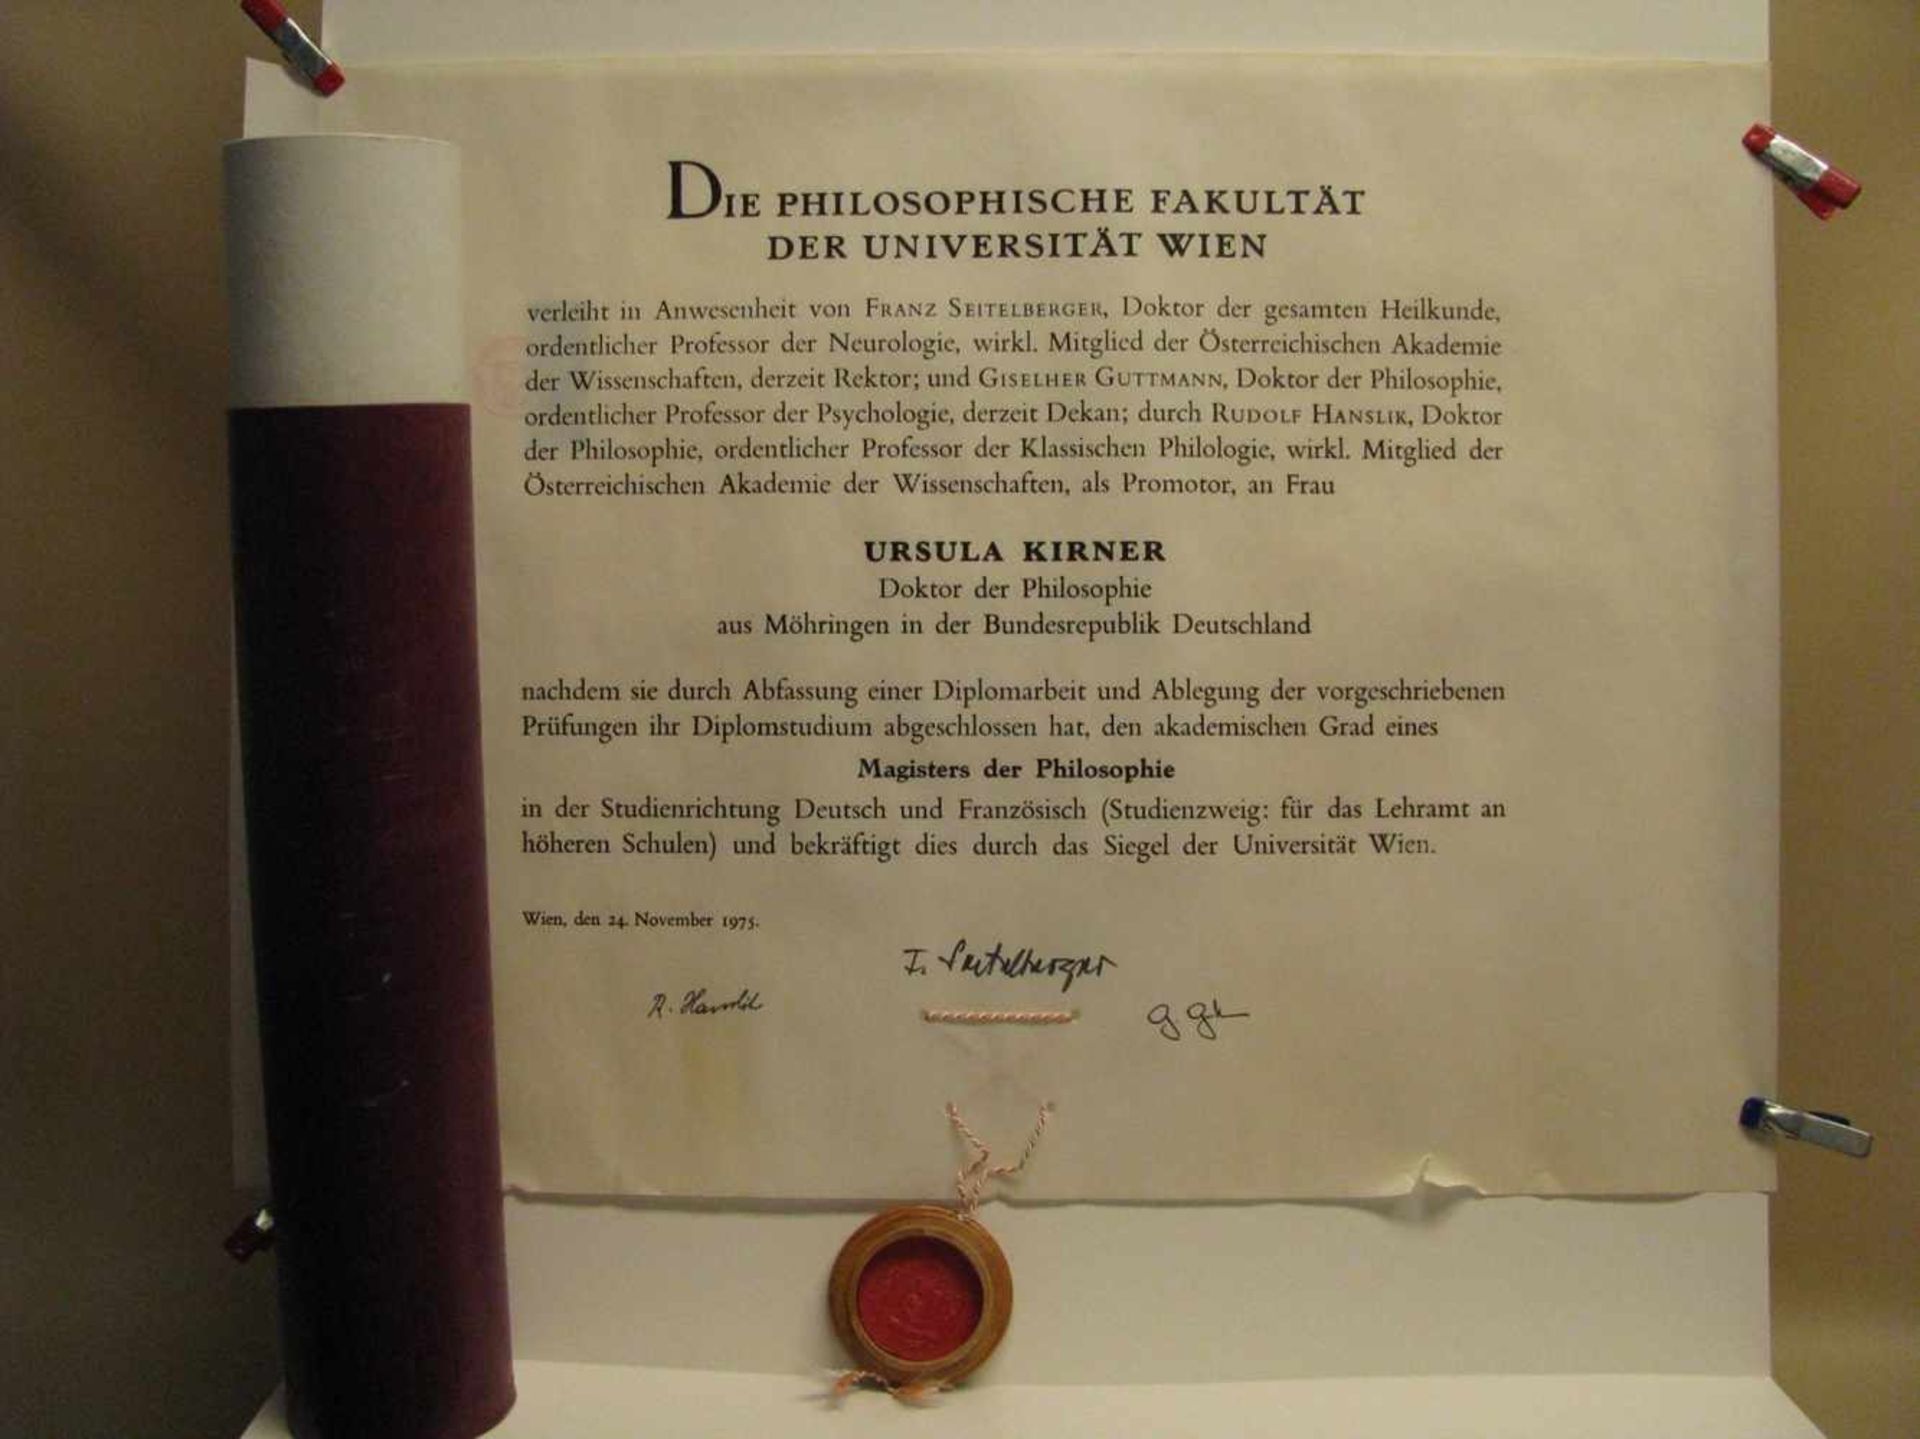 Doktorbrief der Philosophie mit Siegel, Universität Wien, 1975, Pergament.- - -19.00 % buyer's